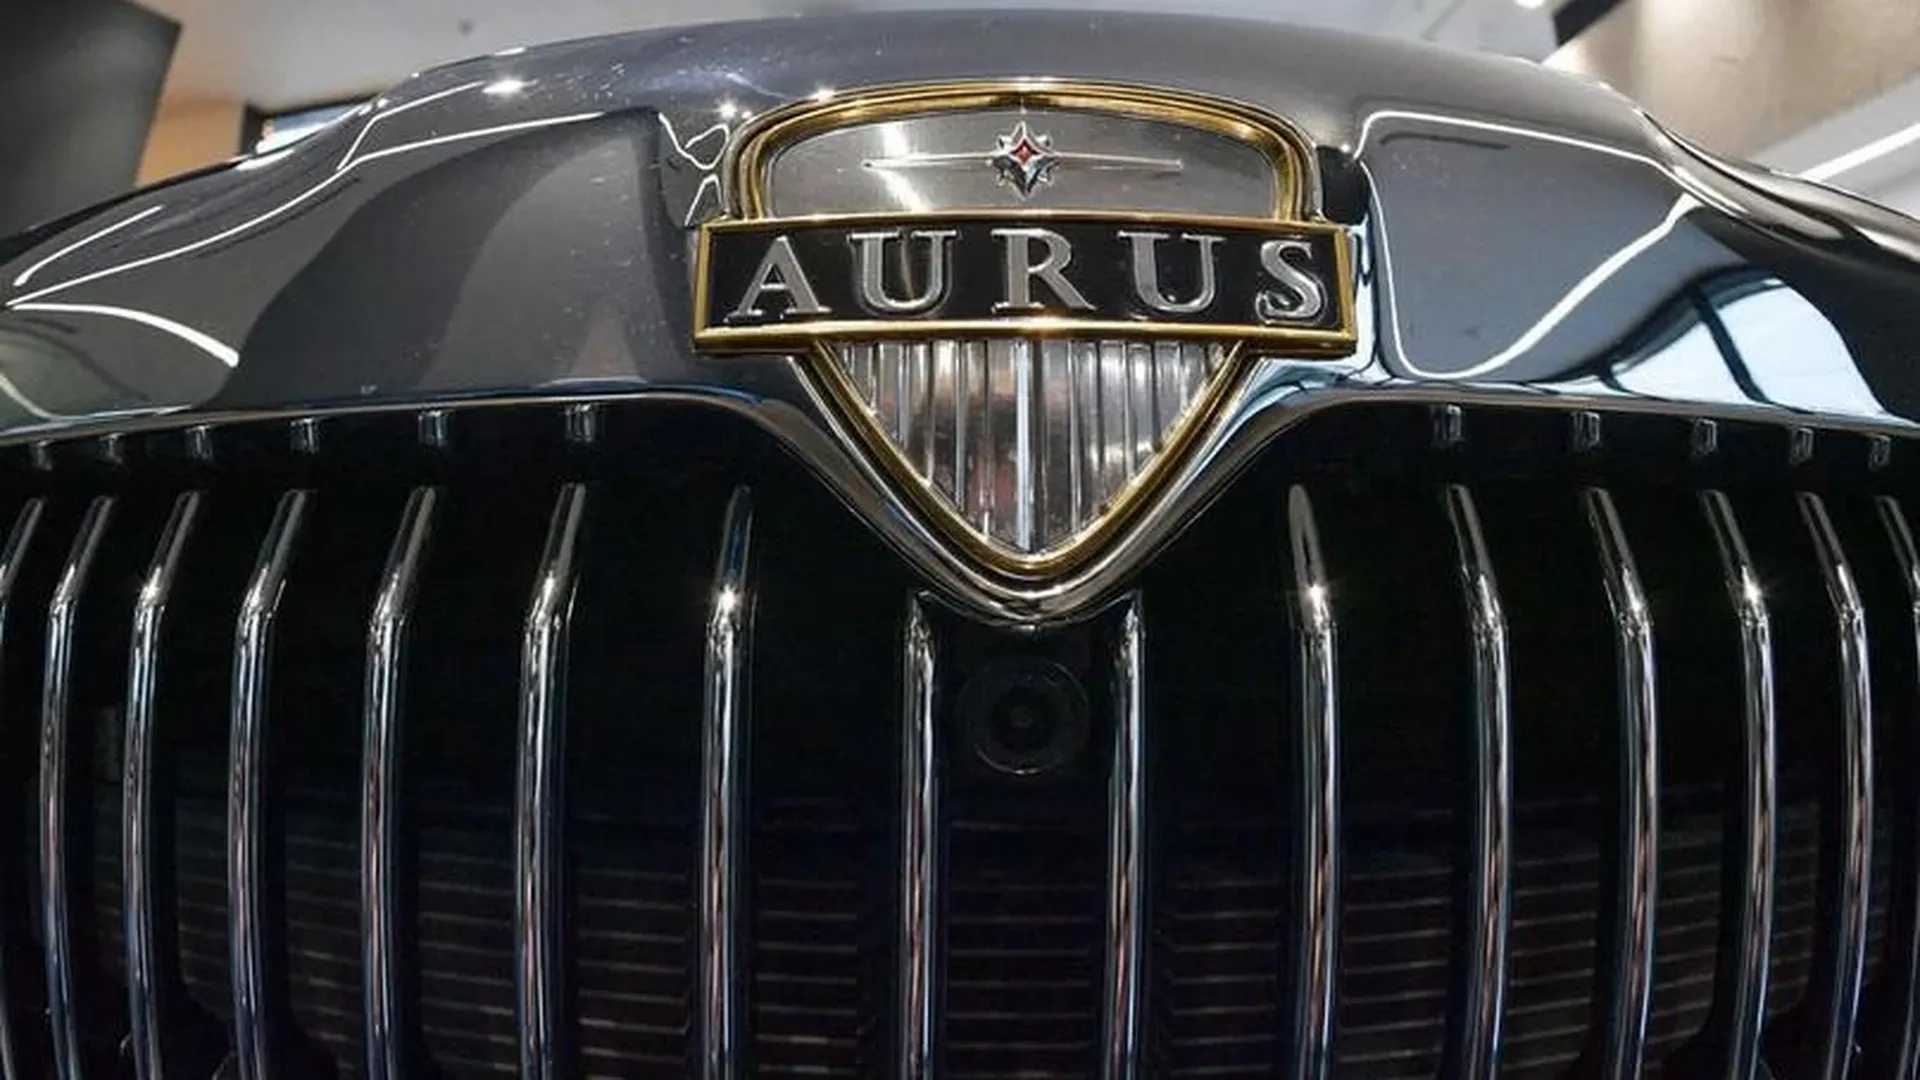 Сборку российских автомобилей Aurus запустили в ОАЭ